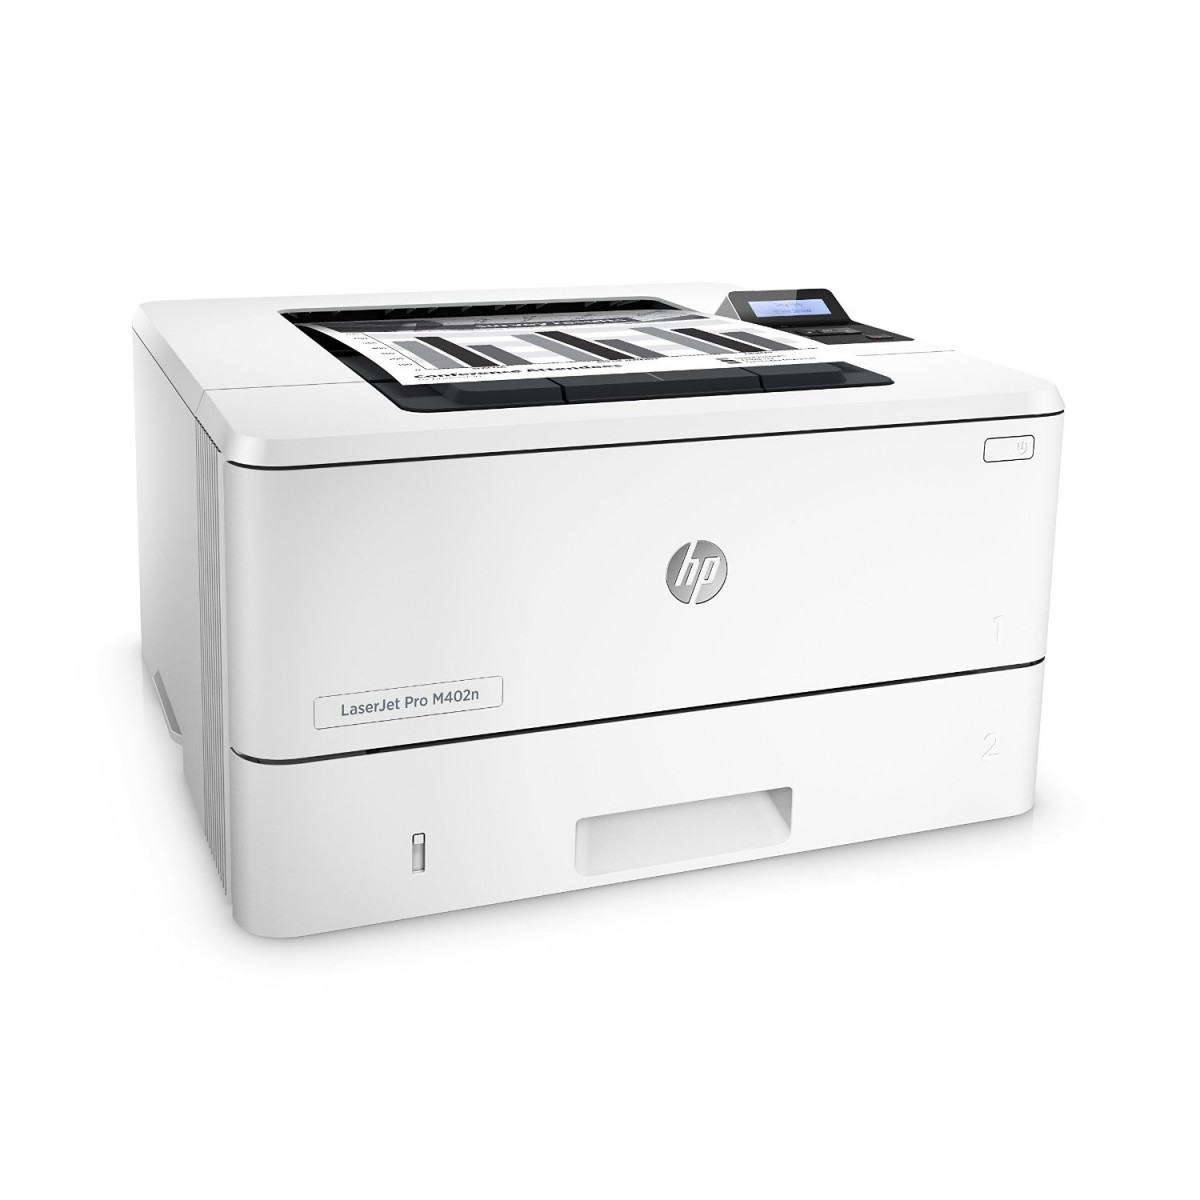 HP LaserJet Pro M402n Review